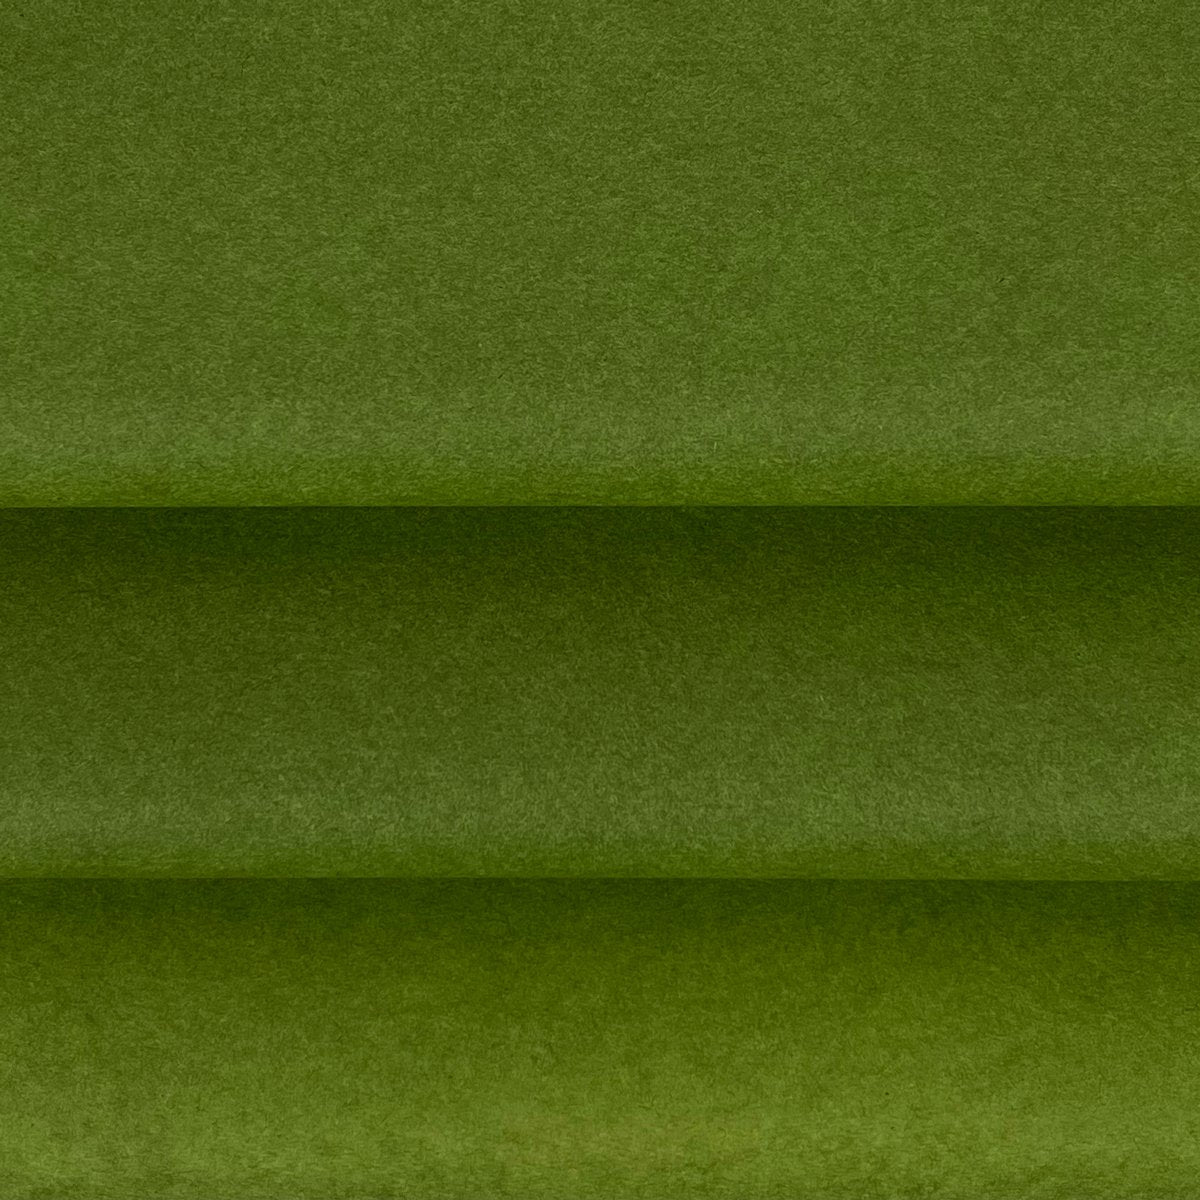 Vloeipapier Groen